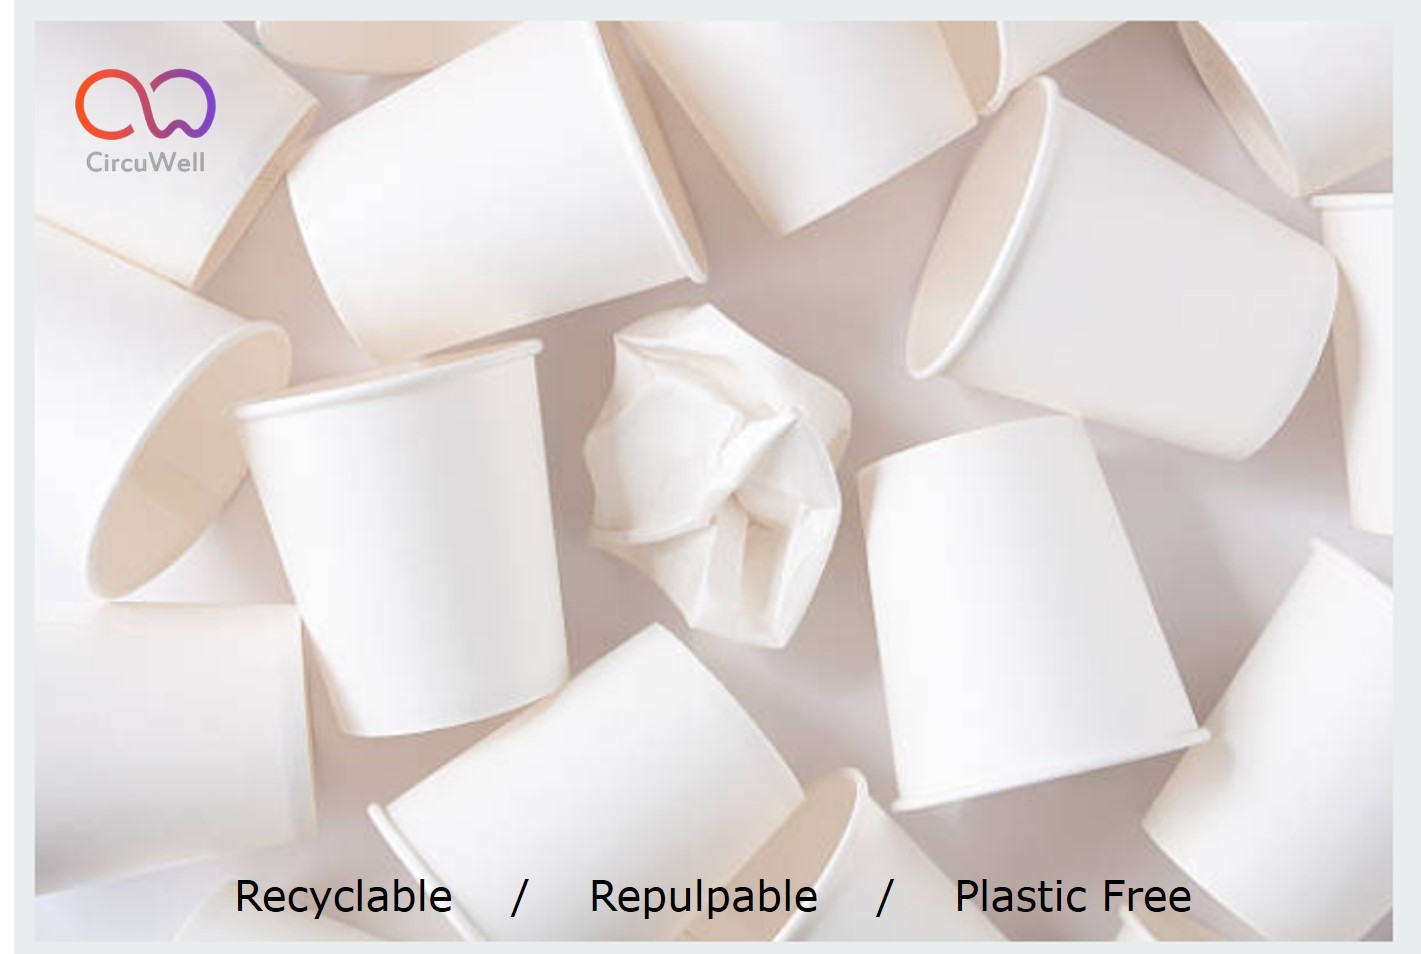 CircuWell 益利系列全紙可回收容器解決方案